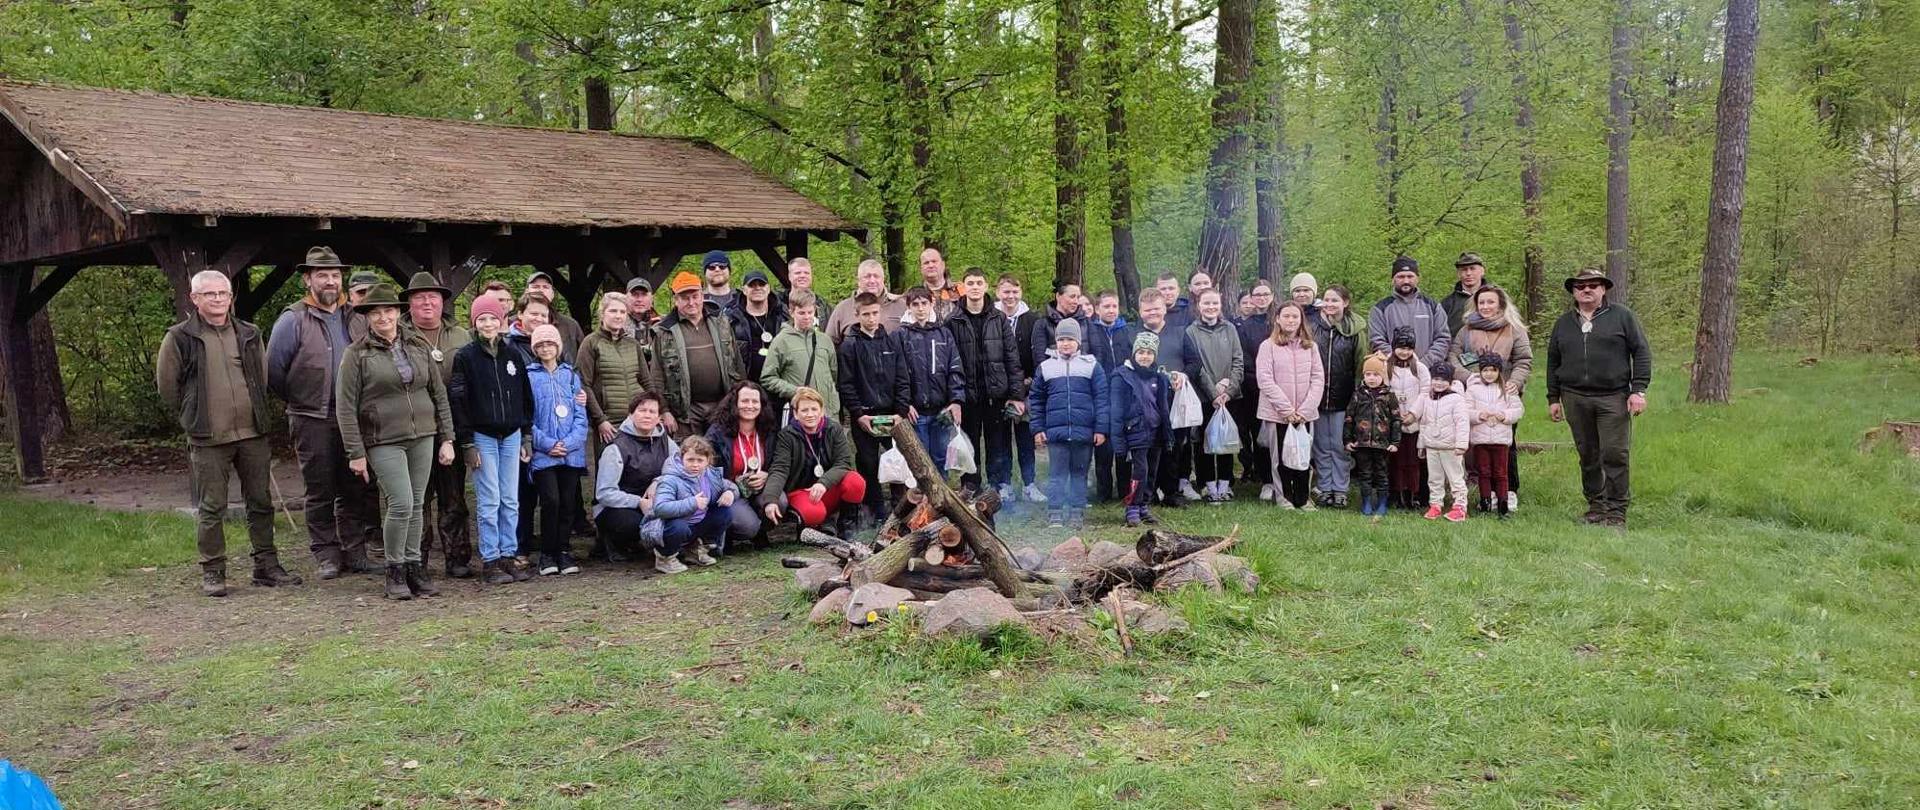 Zdjęciu wszystkich uczestników akcji przy ognisku w tle las oraz altana 